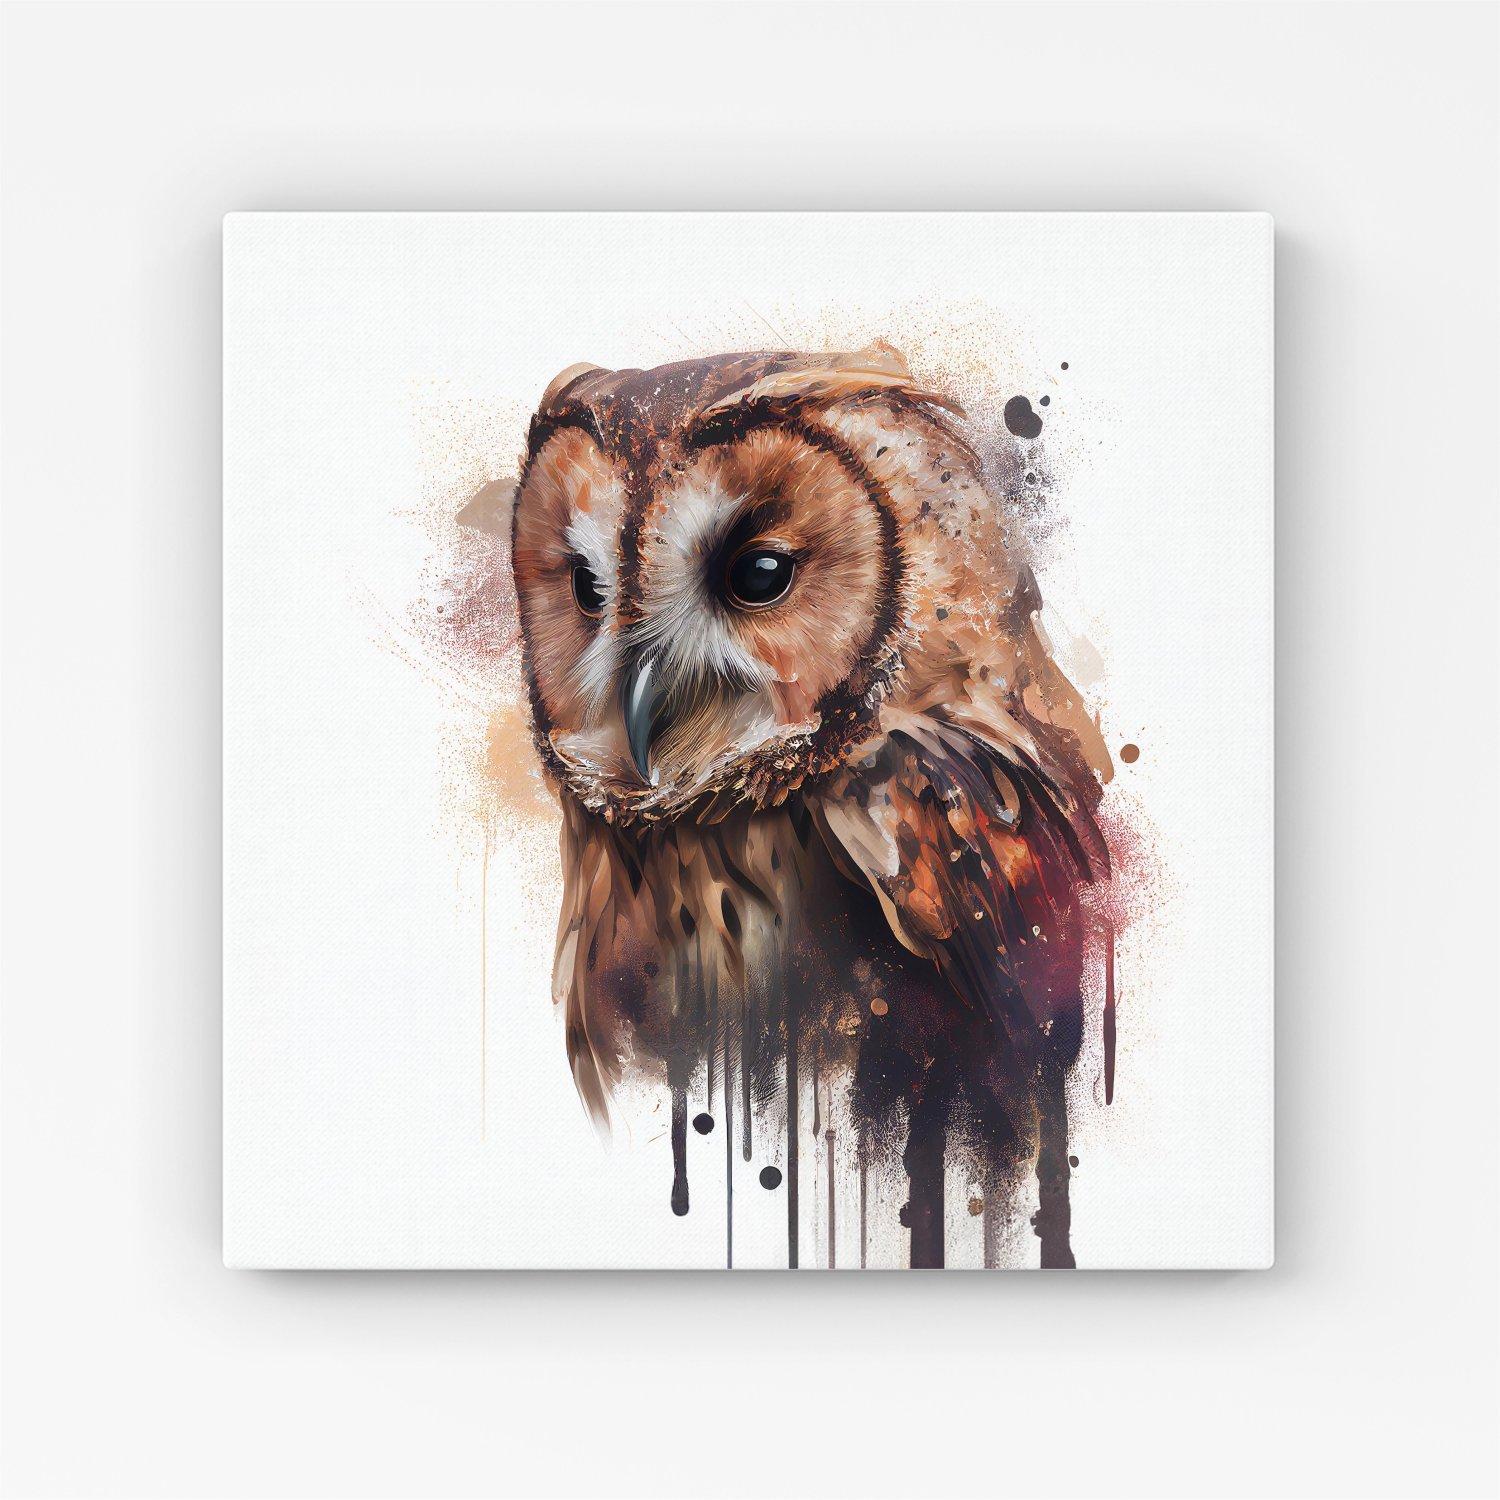 Tawny Owl Face Splashart Light Background Canvas